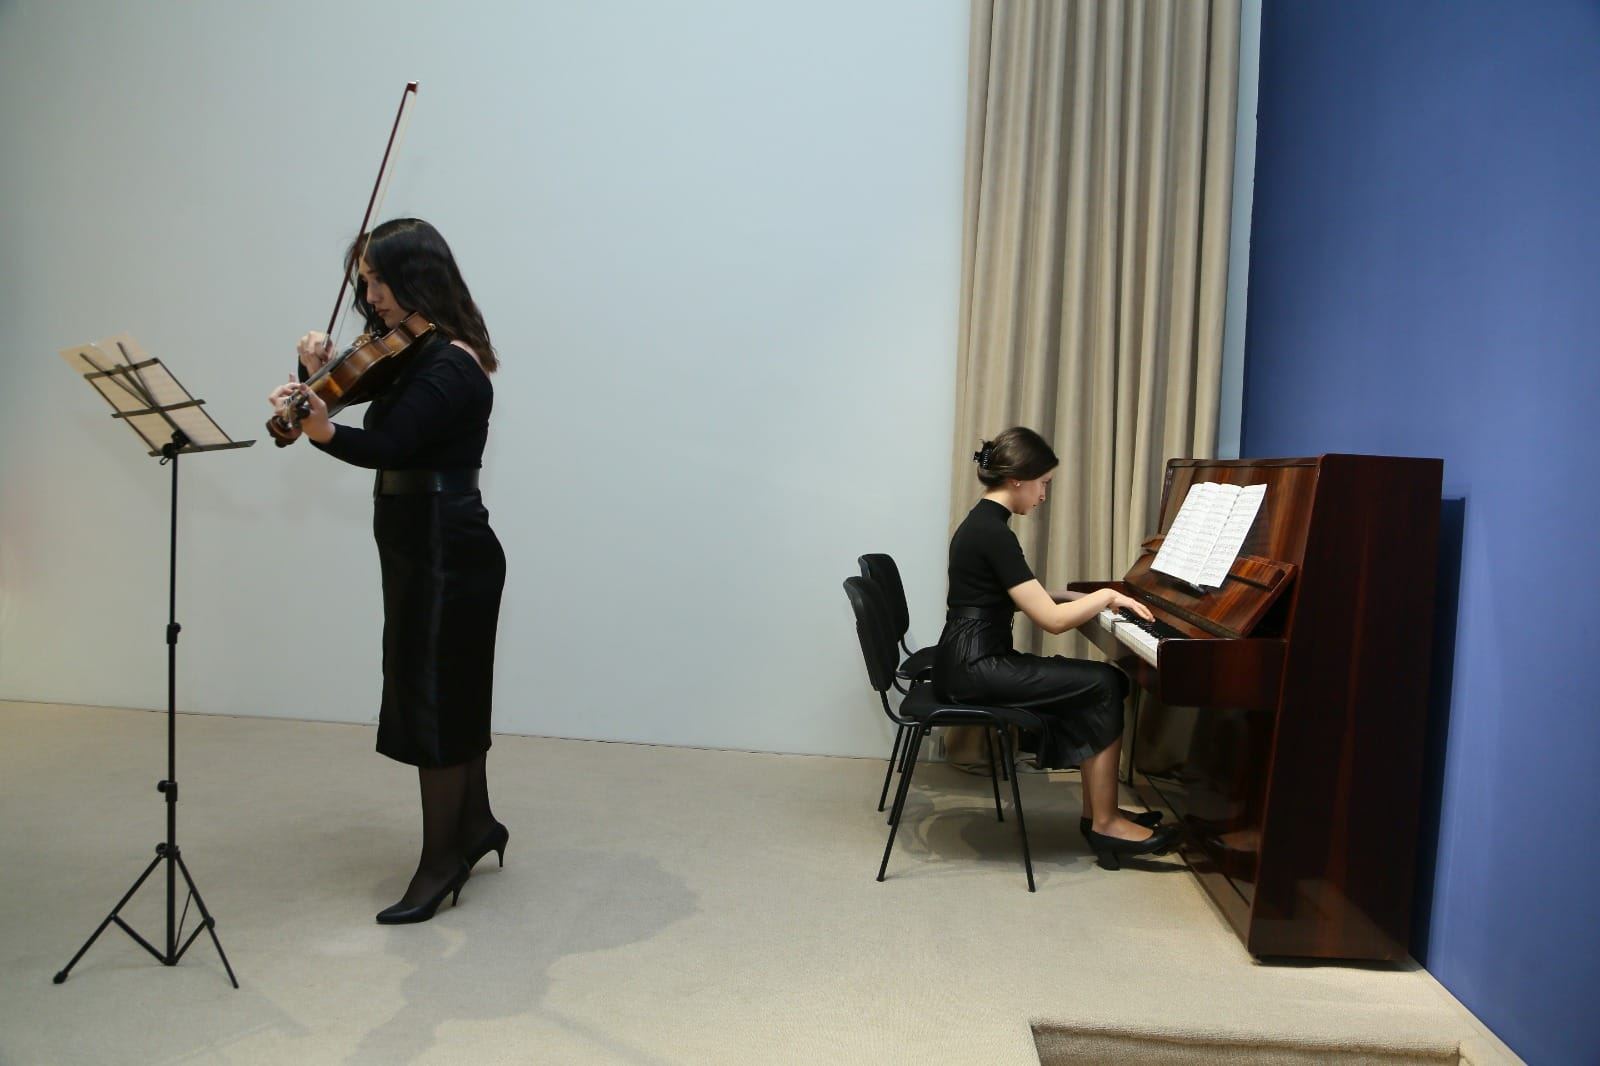 Молодежь почтила память жертв Ходжалинского геноцида музыкальными произведениями (ФОТО)